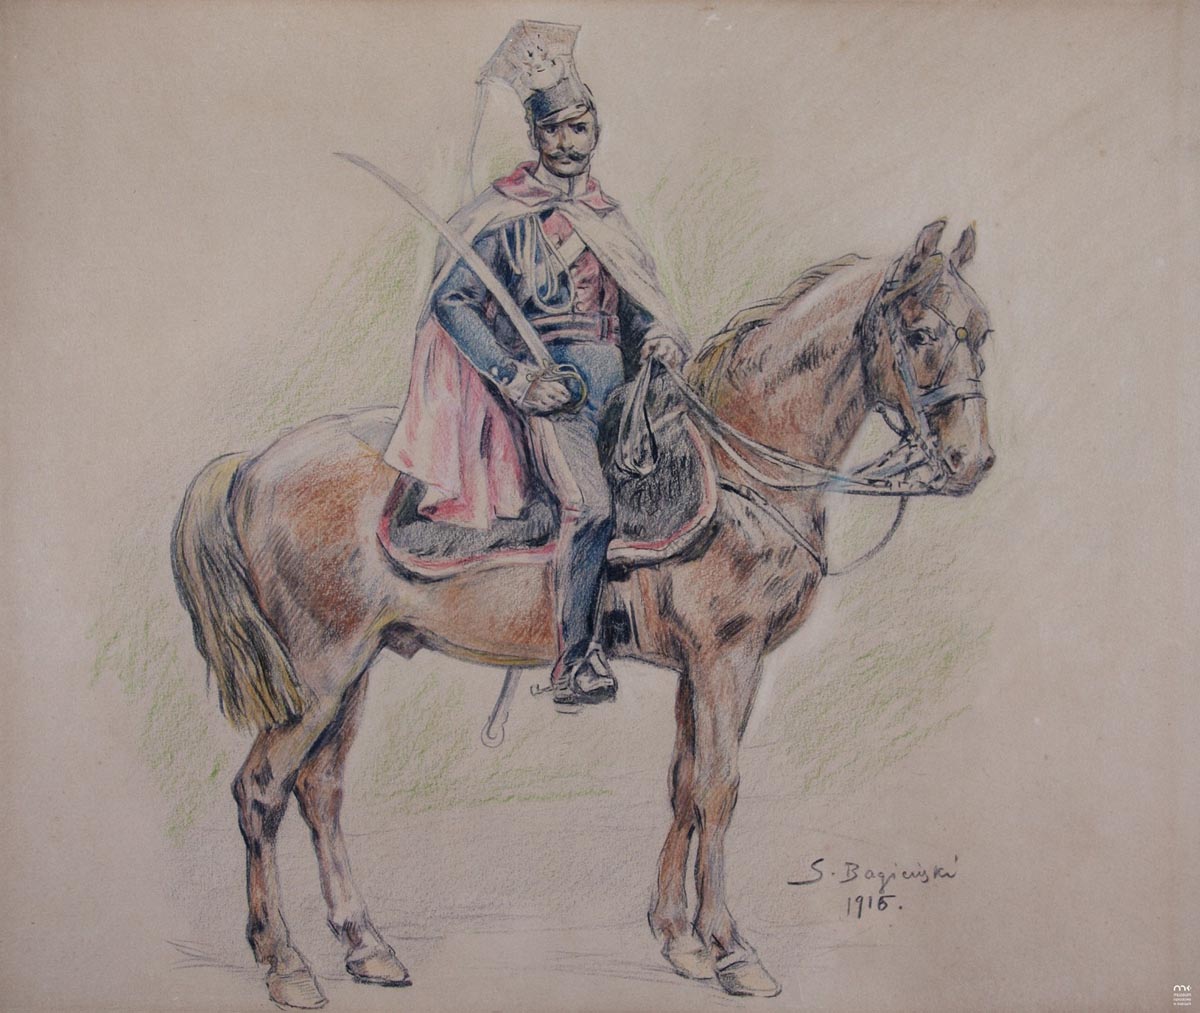 Uhlan Officer on Horseback